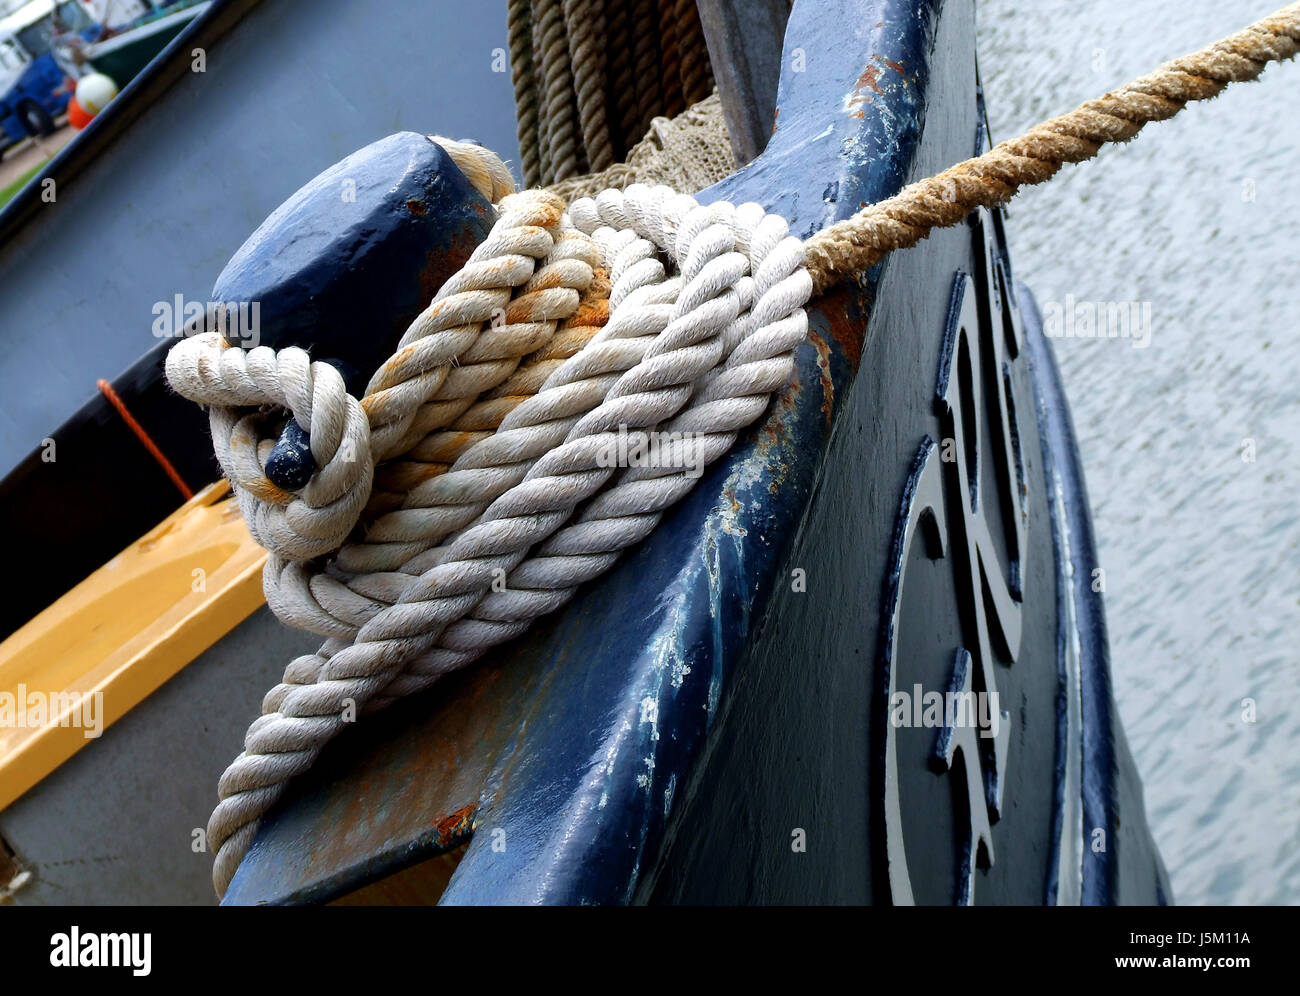 Navigation-Tau Leine Angeln Schiff gelten Sisal Seil Schiffstau Anleinen zu  befestigen Stockfotografie - Alamy